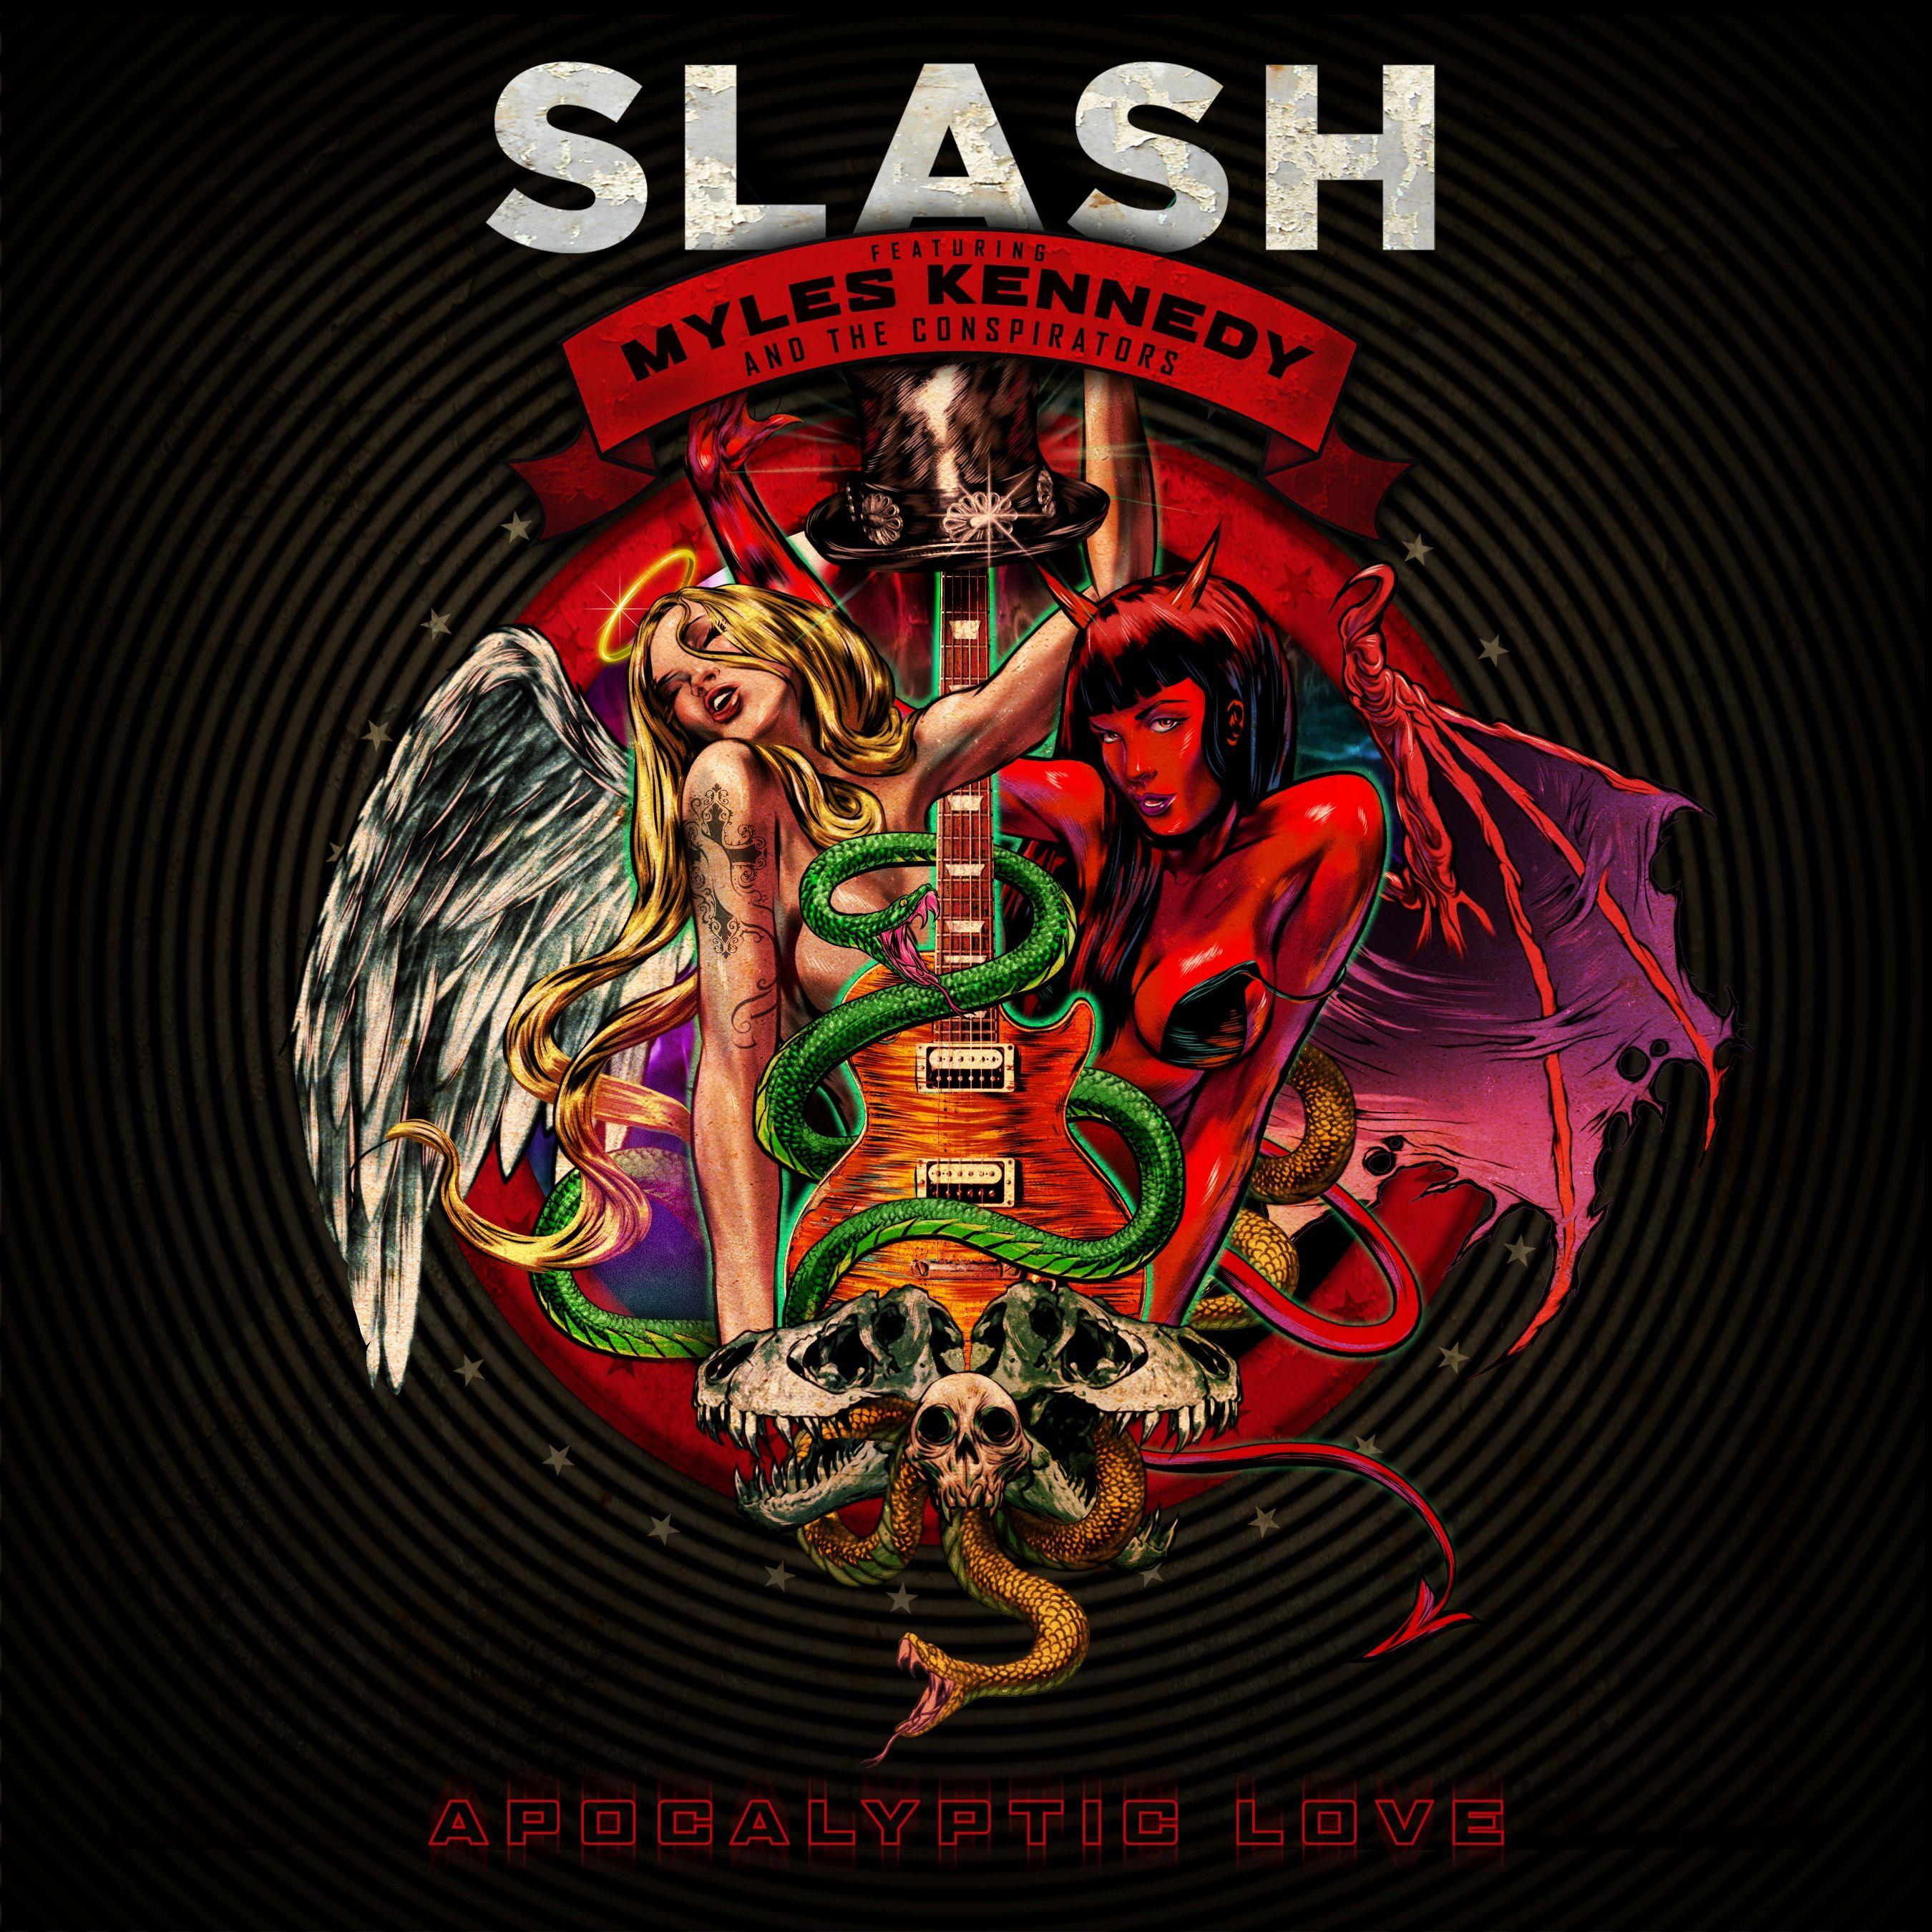 Slashs nye album! ft. Myles Kennedy and the Conspirators. Fett